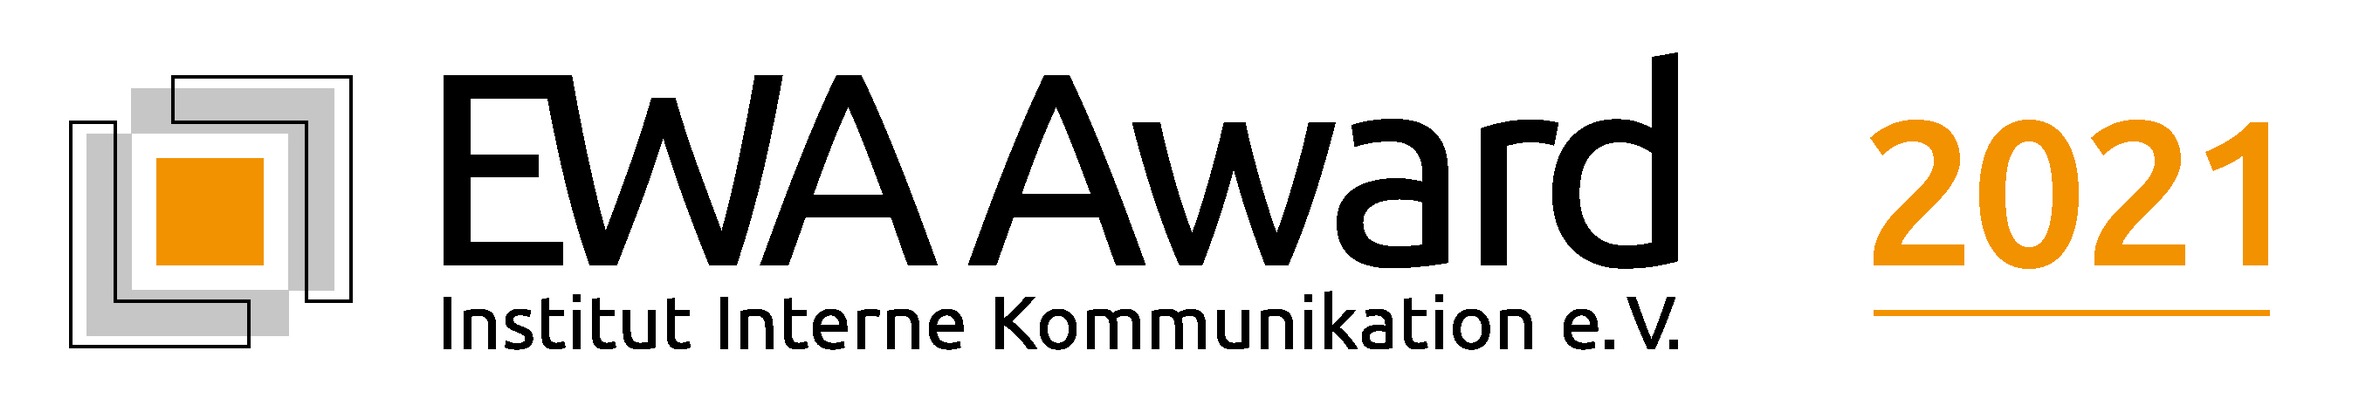 EWA Award 2021: Preisgekrönte Konzepte in herausfordernder Zeit / 18 Auszeichnungen in Print, Digital, Spezial und für besonders wertschätzende Unternehmen